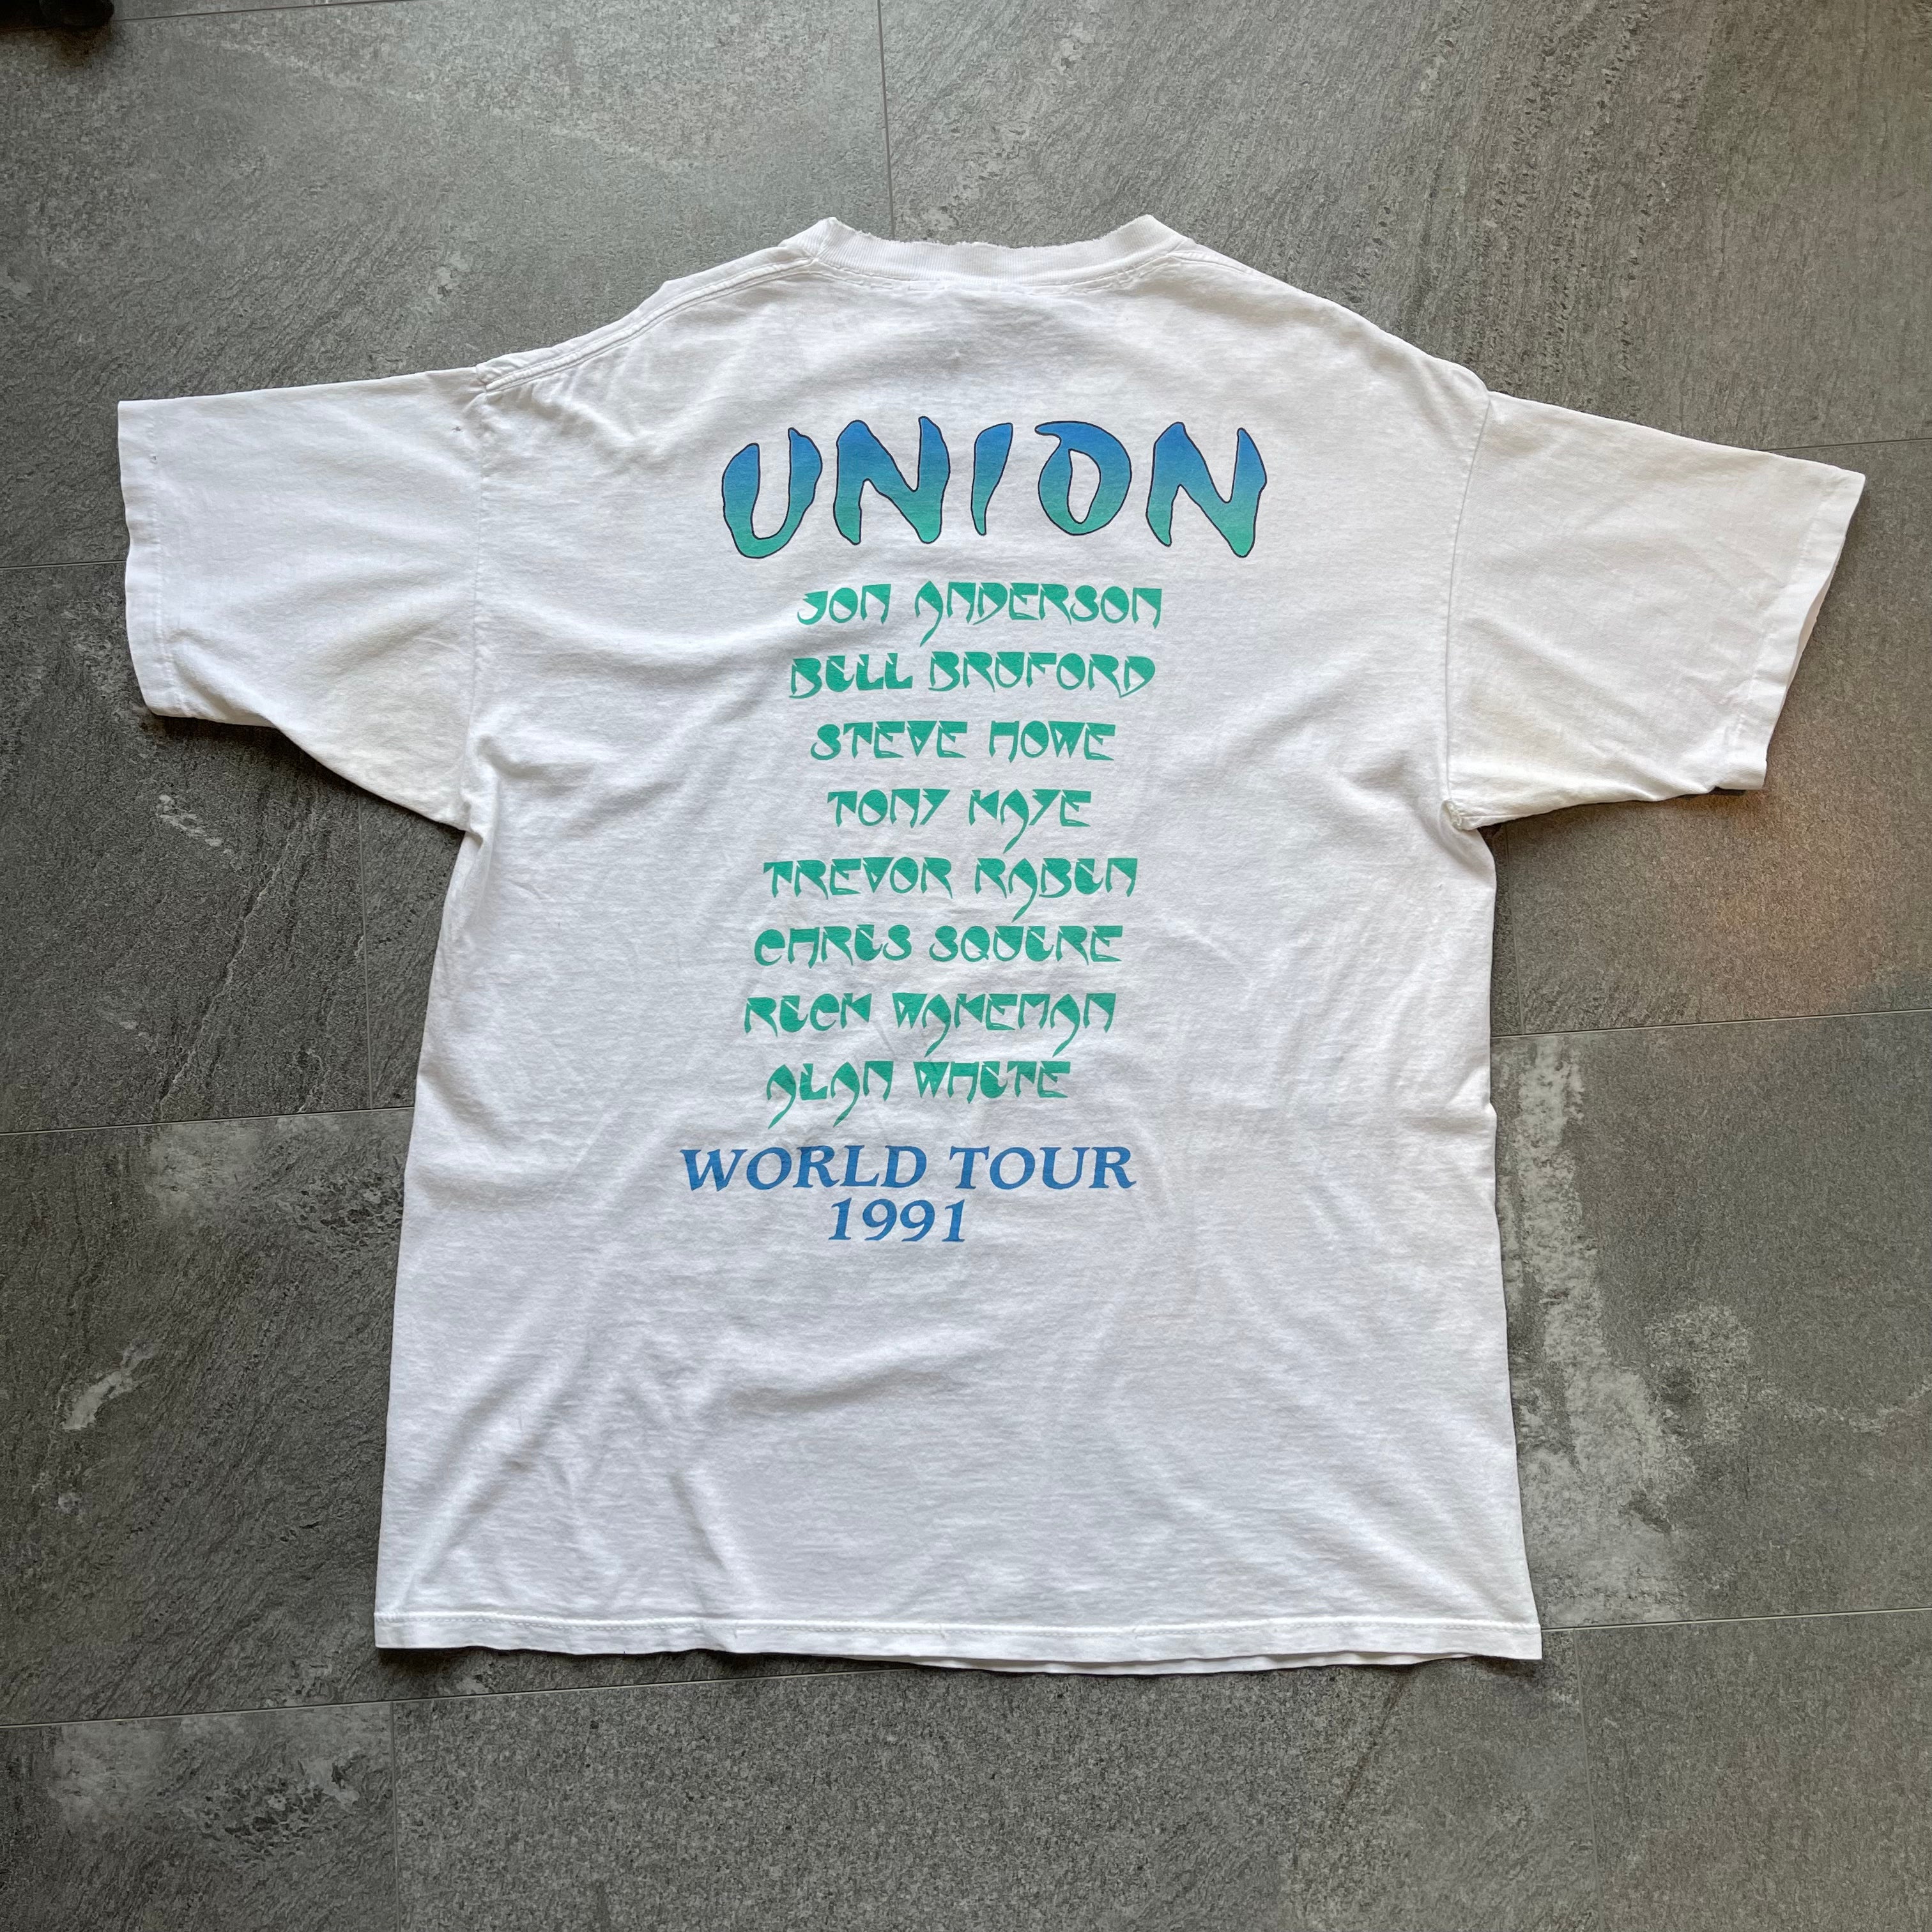 Yess Union 1991 World Tour